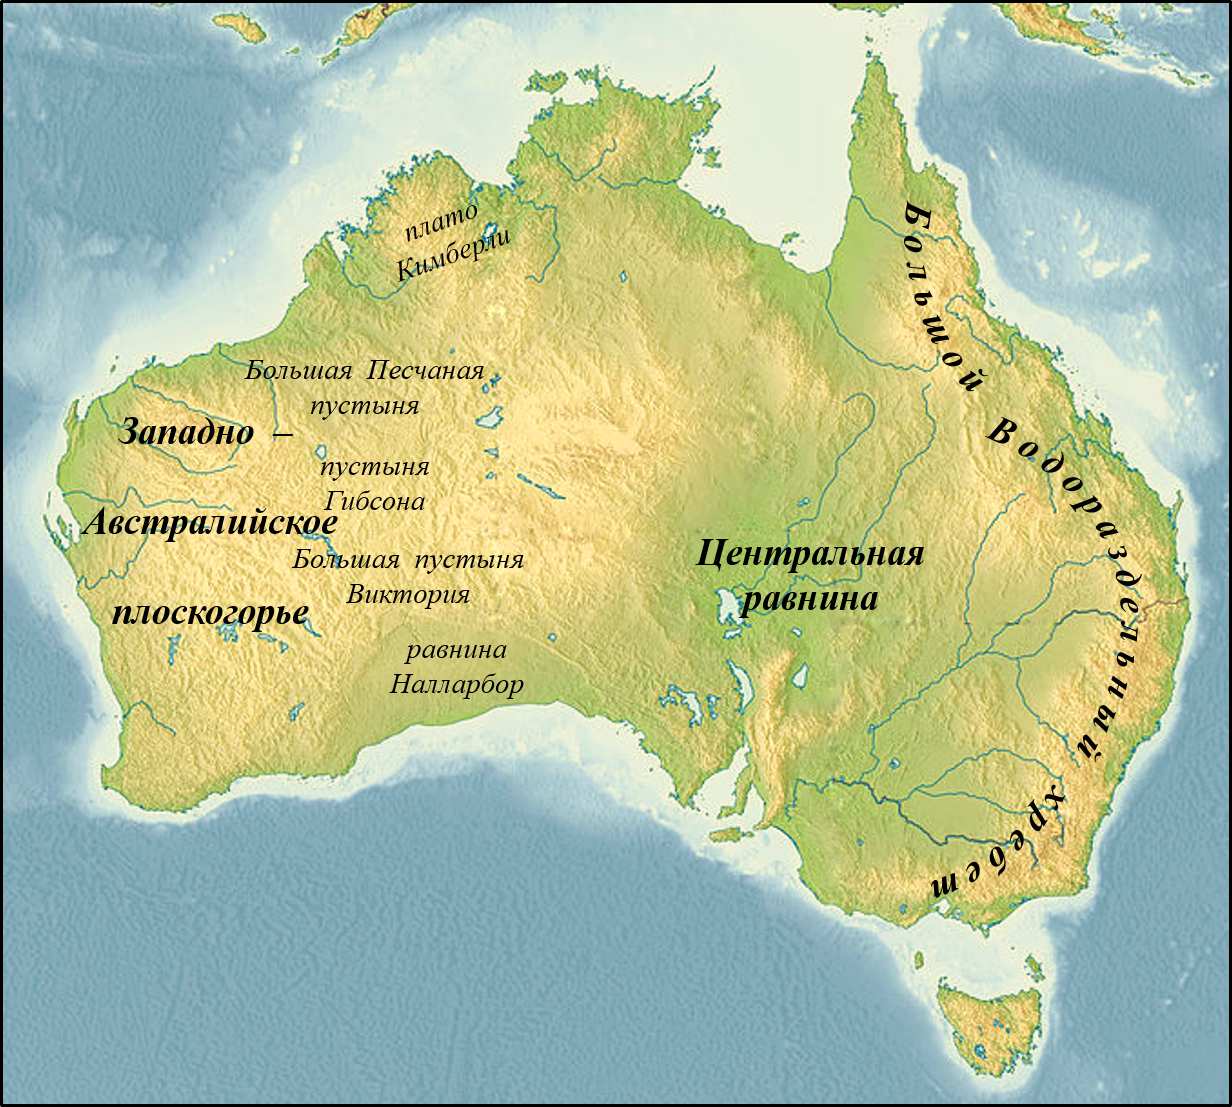 Большой Водораздельный хребет в Австралии на карте. Центральная низменность Австралии на карте Австралии. Название крупных форм рельефа Австралии. Западно австралийское плоскогорье на карте Австралии. Находиться громадный